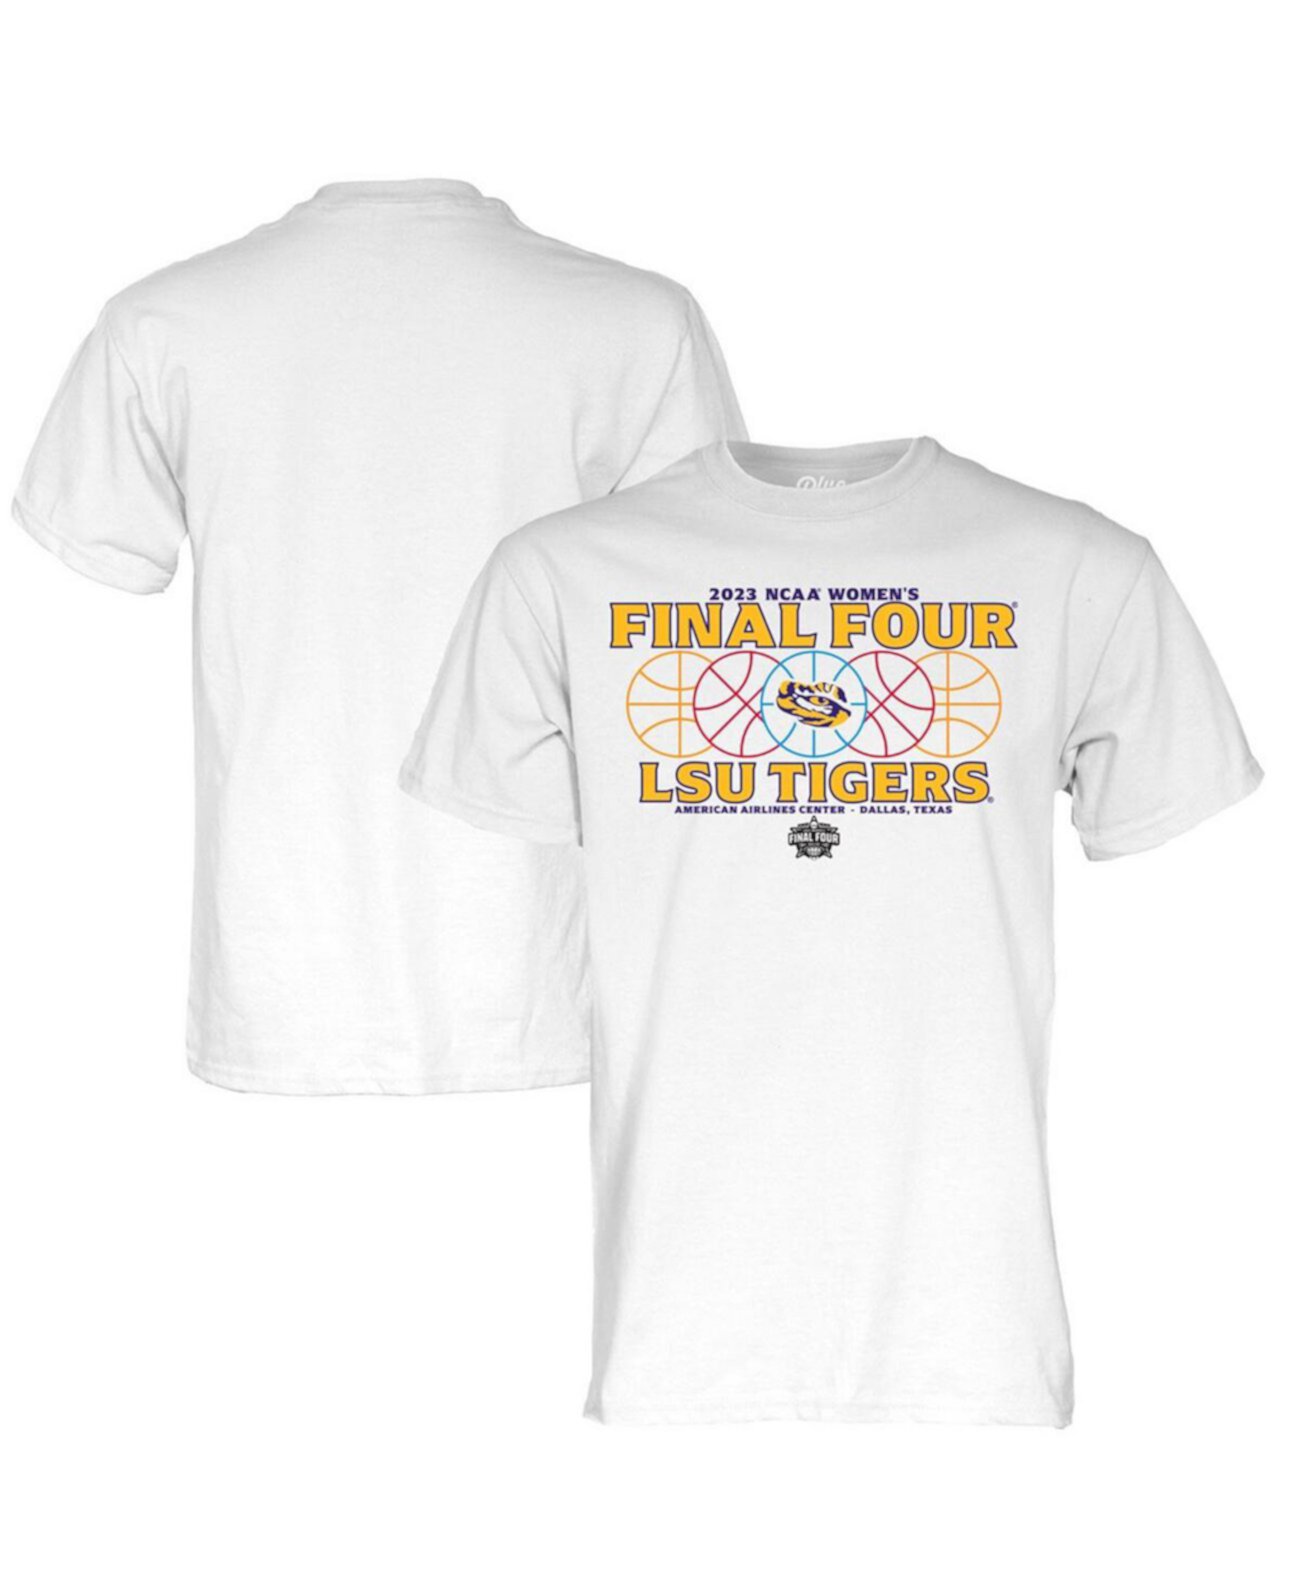 Мужская белая футболка LSU Tigers 2023 NCAA для женского баскетбольного турнира March Madness Final Four Gear Blue 84